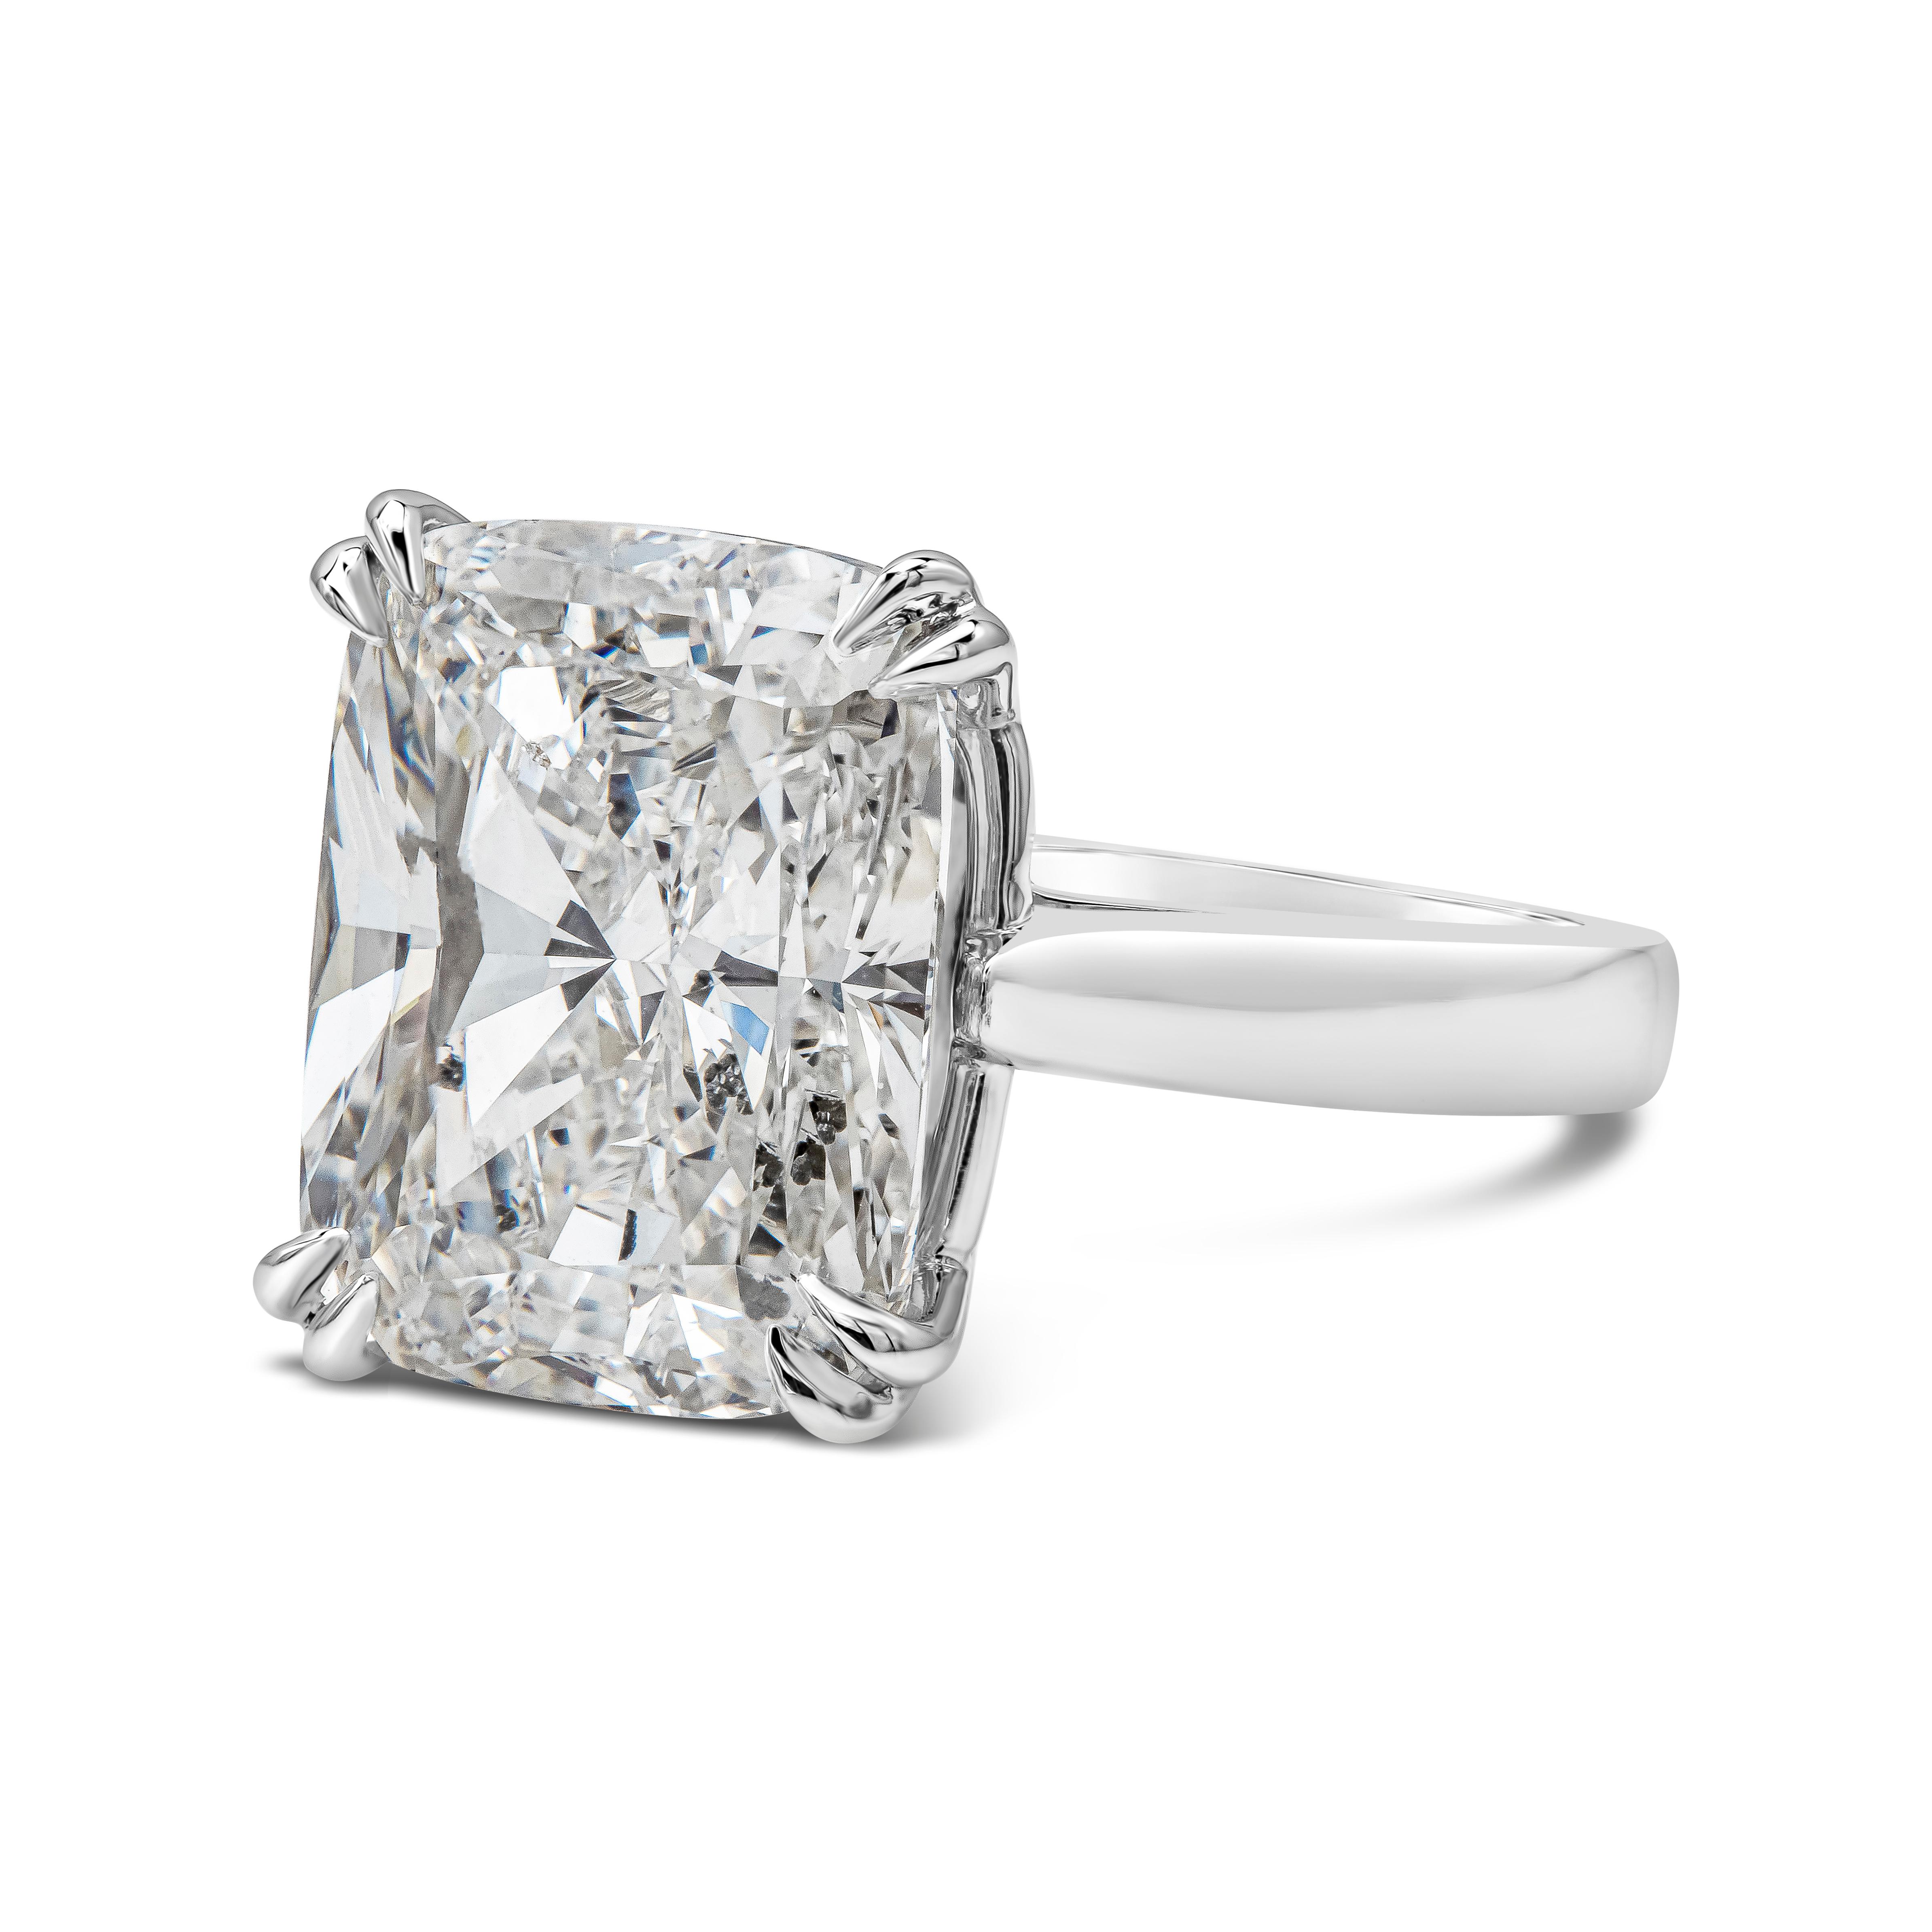 Une bague de fiançailles solitaire classique mettant en valeur un diamant allongé de taille coussin pesant 7,76 carats au total. Le diamant a été certifié par le GIA comme étant de couleur F et de pureté SI2. Fabriqué en platine. Taille 6 US